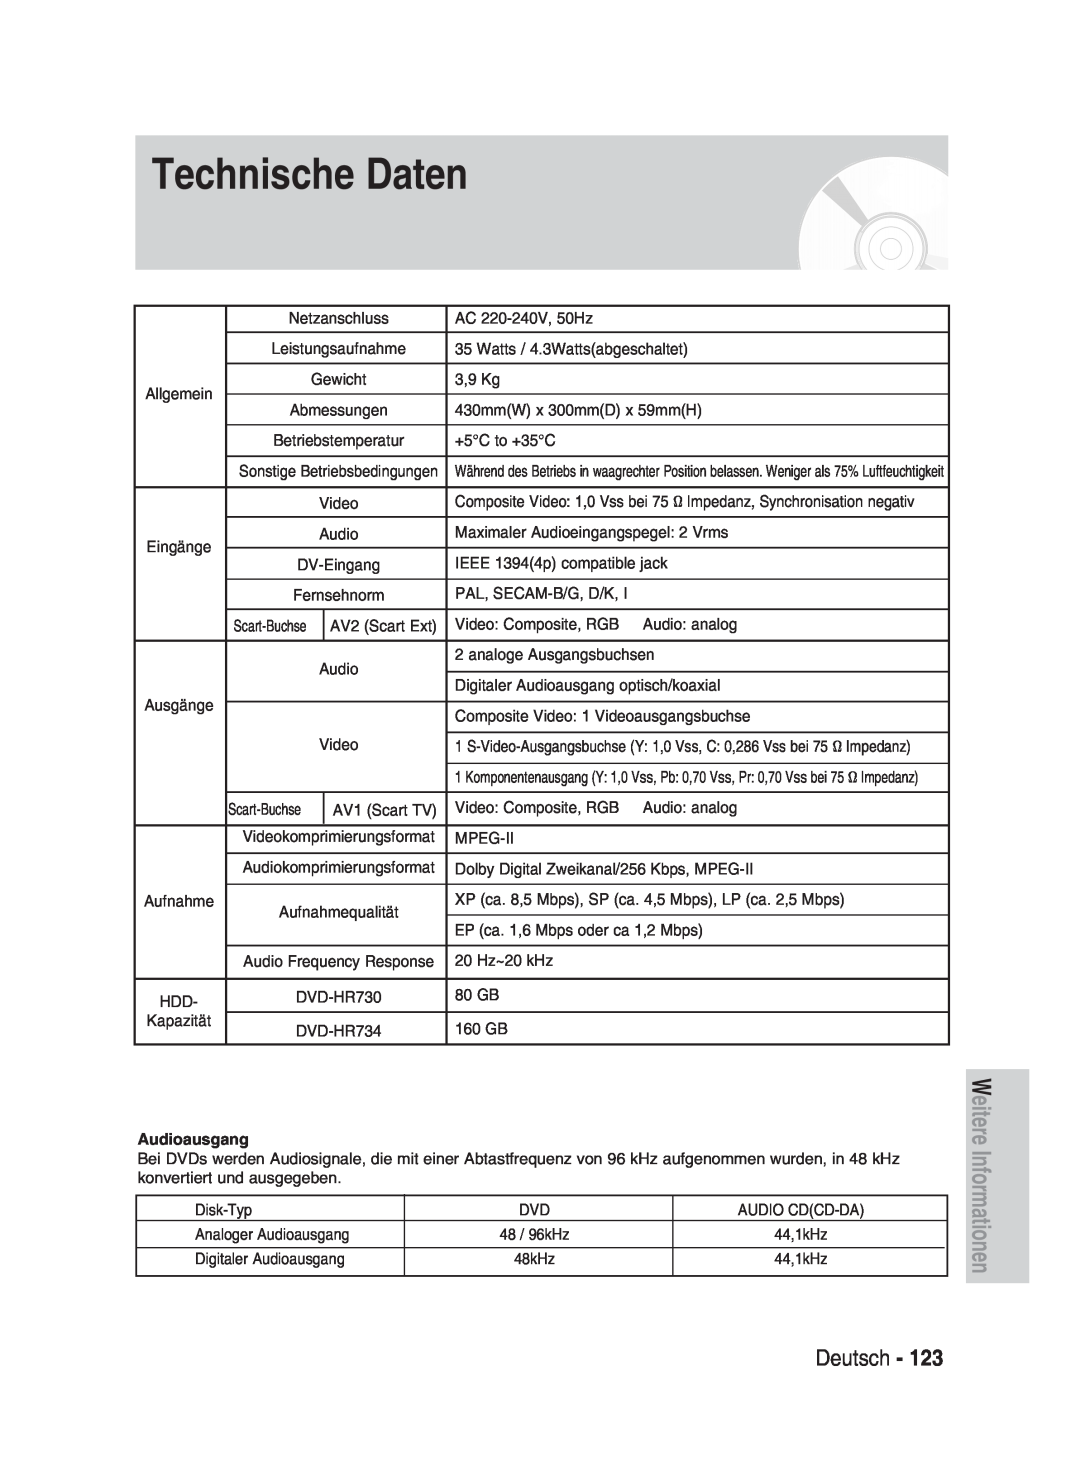 Samsung DVD-HR730/XEG, DVD-HR730/XEC, DVD-HR730/XEB manual Technische Daten, Deutsch, Weitere Informationen, Audioausgang 